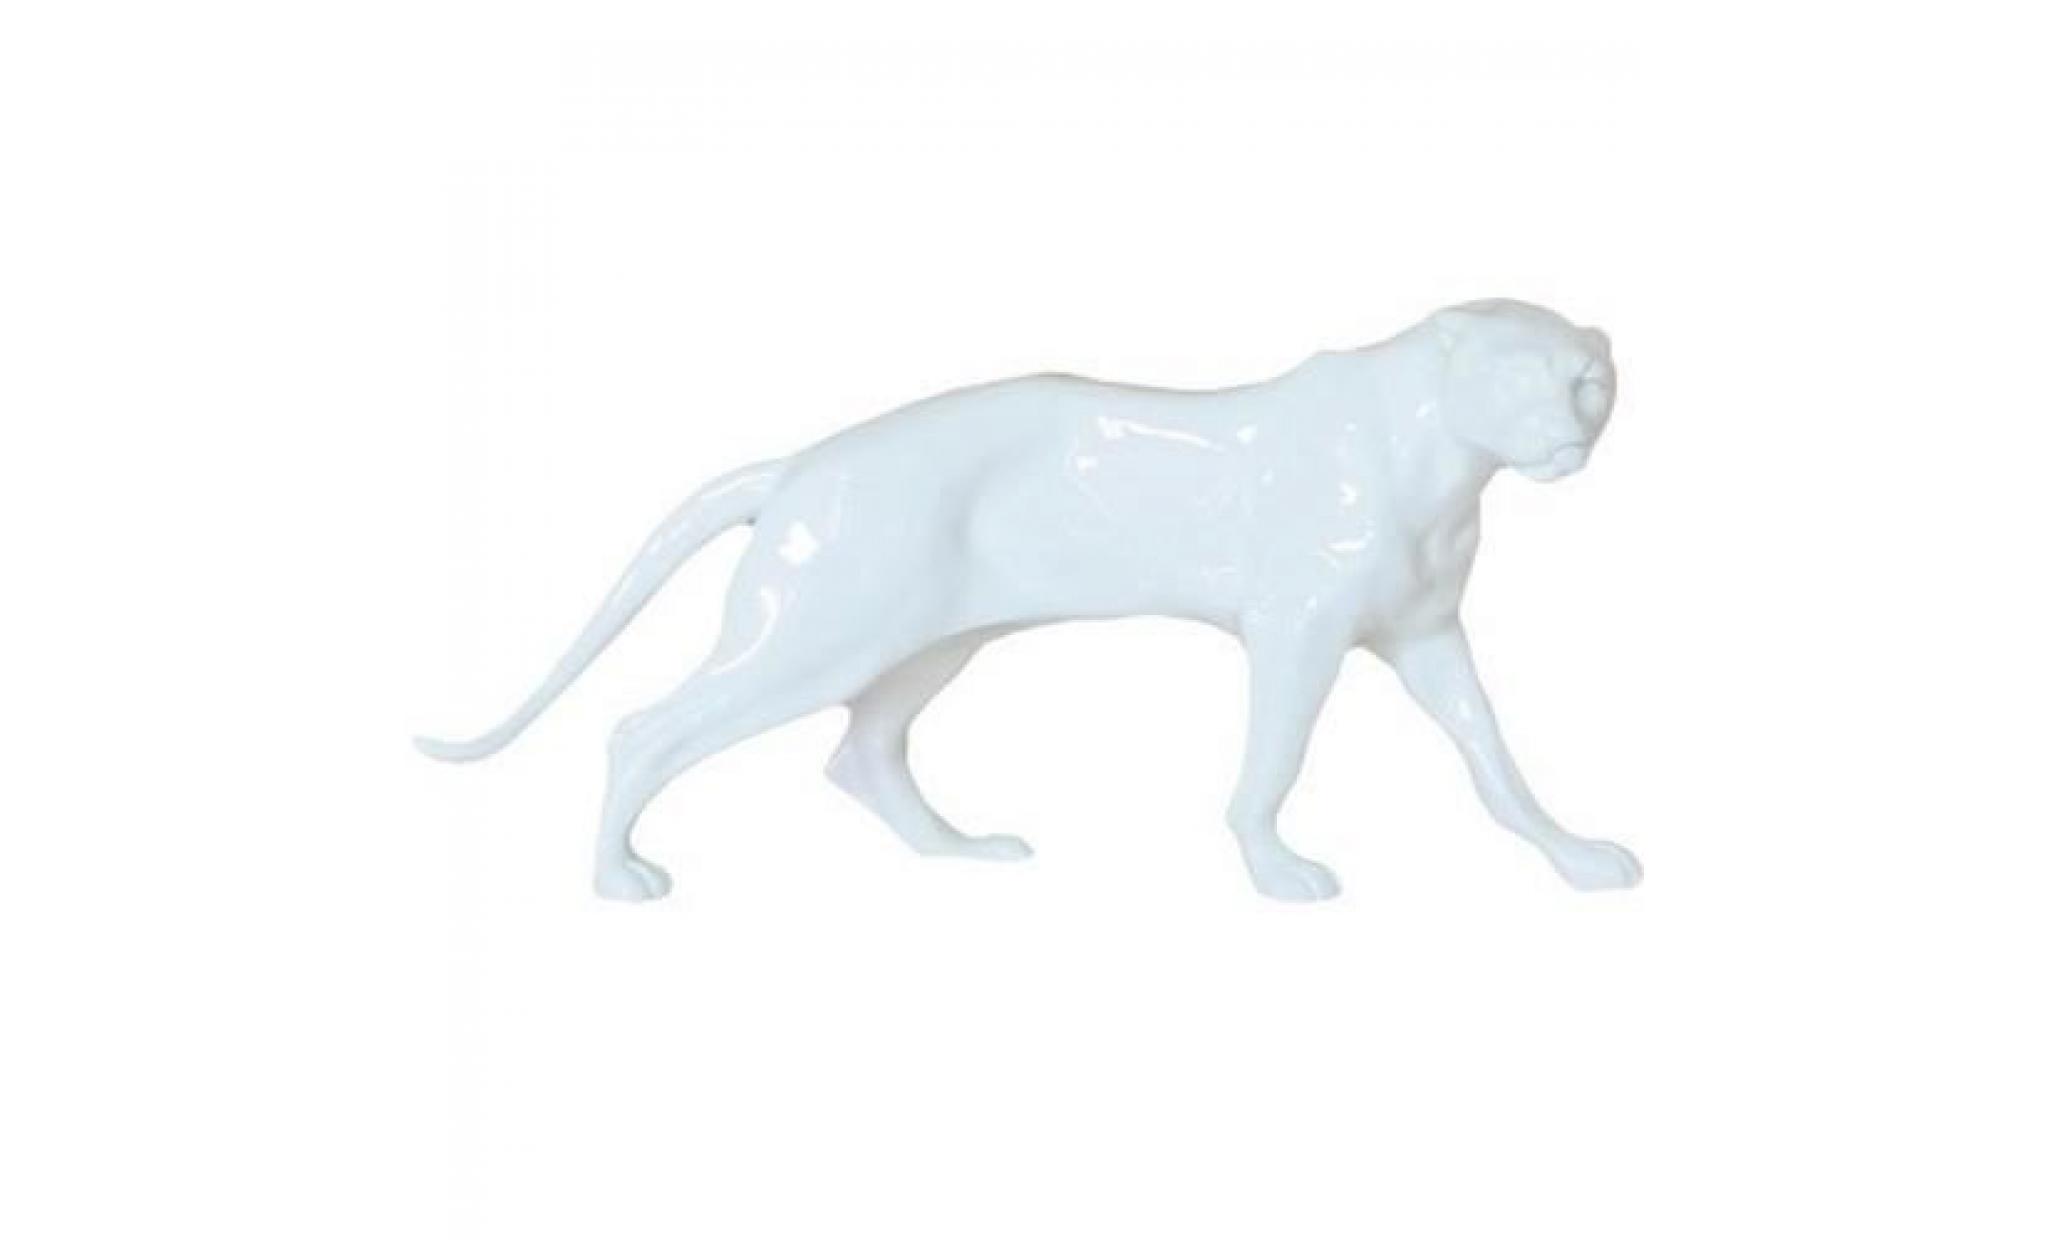 la hauteur white panther caractère 11 cm, largeur 26 cm, profondeur de 8 cm, la sculpture d'art en pierre, précieuse et magnifique